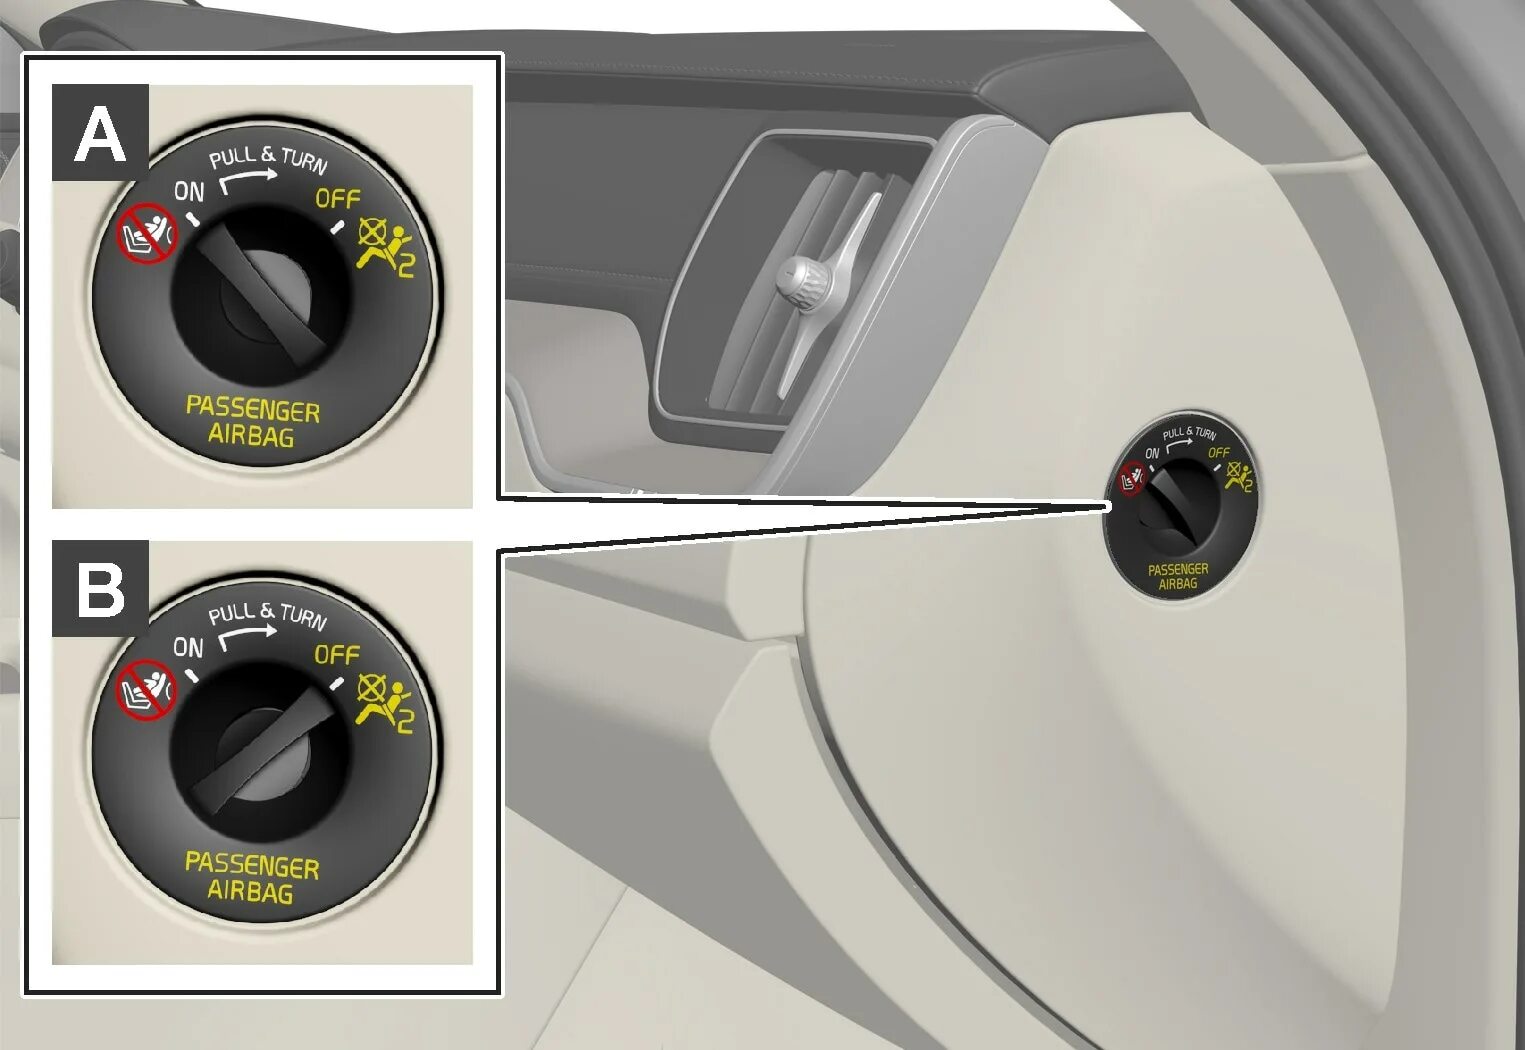 2018 отключение. Отключение подушки безопасности пассажира Вольво s60 2014. Переключатель подушки безопасности 1381035. Как отключить подушку безопасности спереди. Как отключить подушку безопасности пассажира Вольво s40.